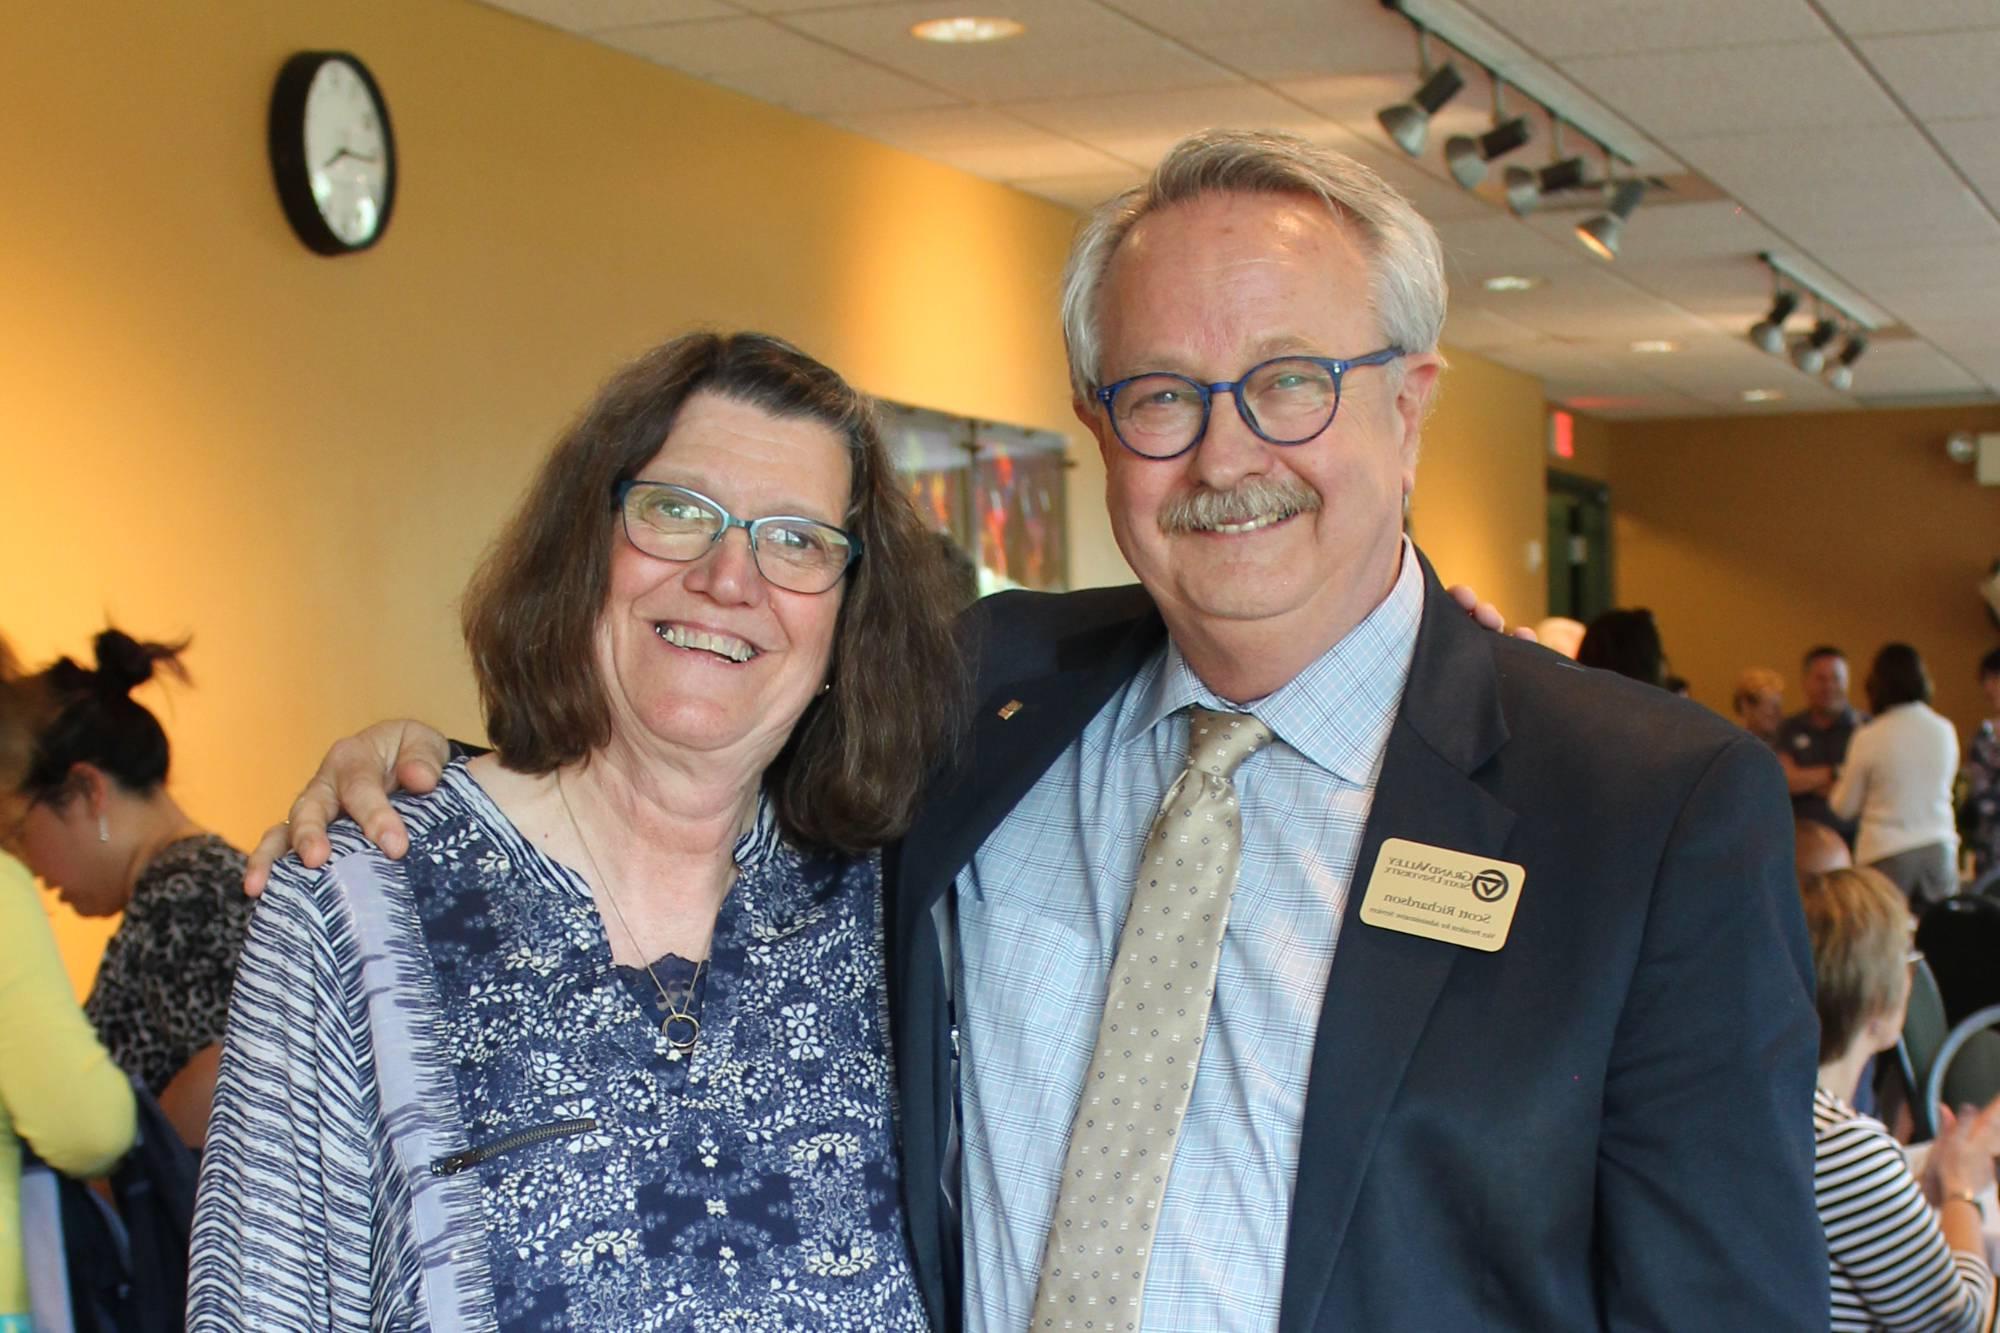 两个GVSU退休人员的照片, 斯科特·理查森和邦妮·玛卡, 他们拥抱在一起微笑着